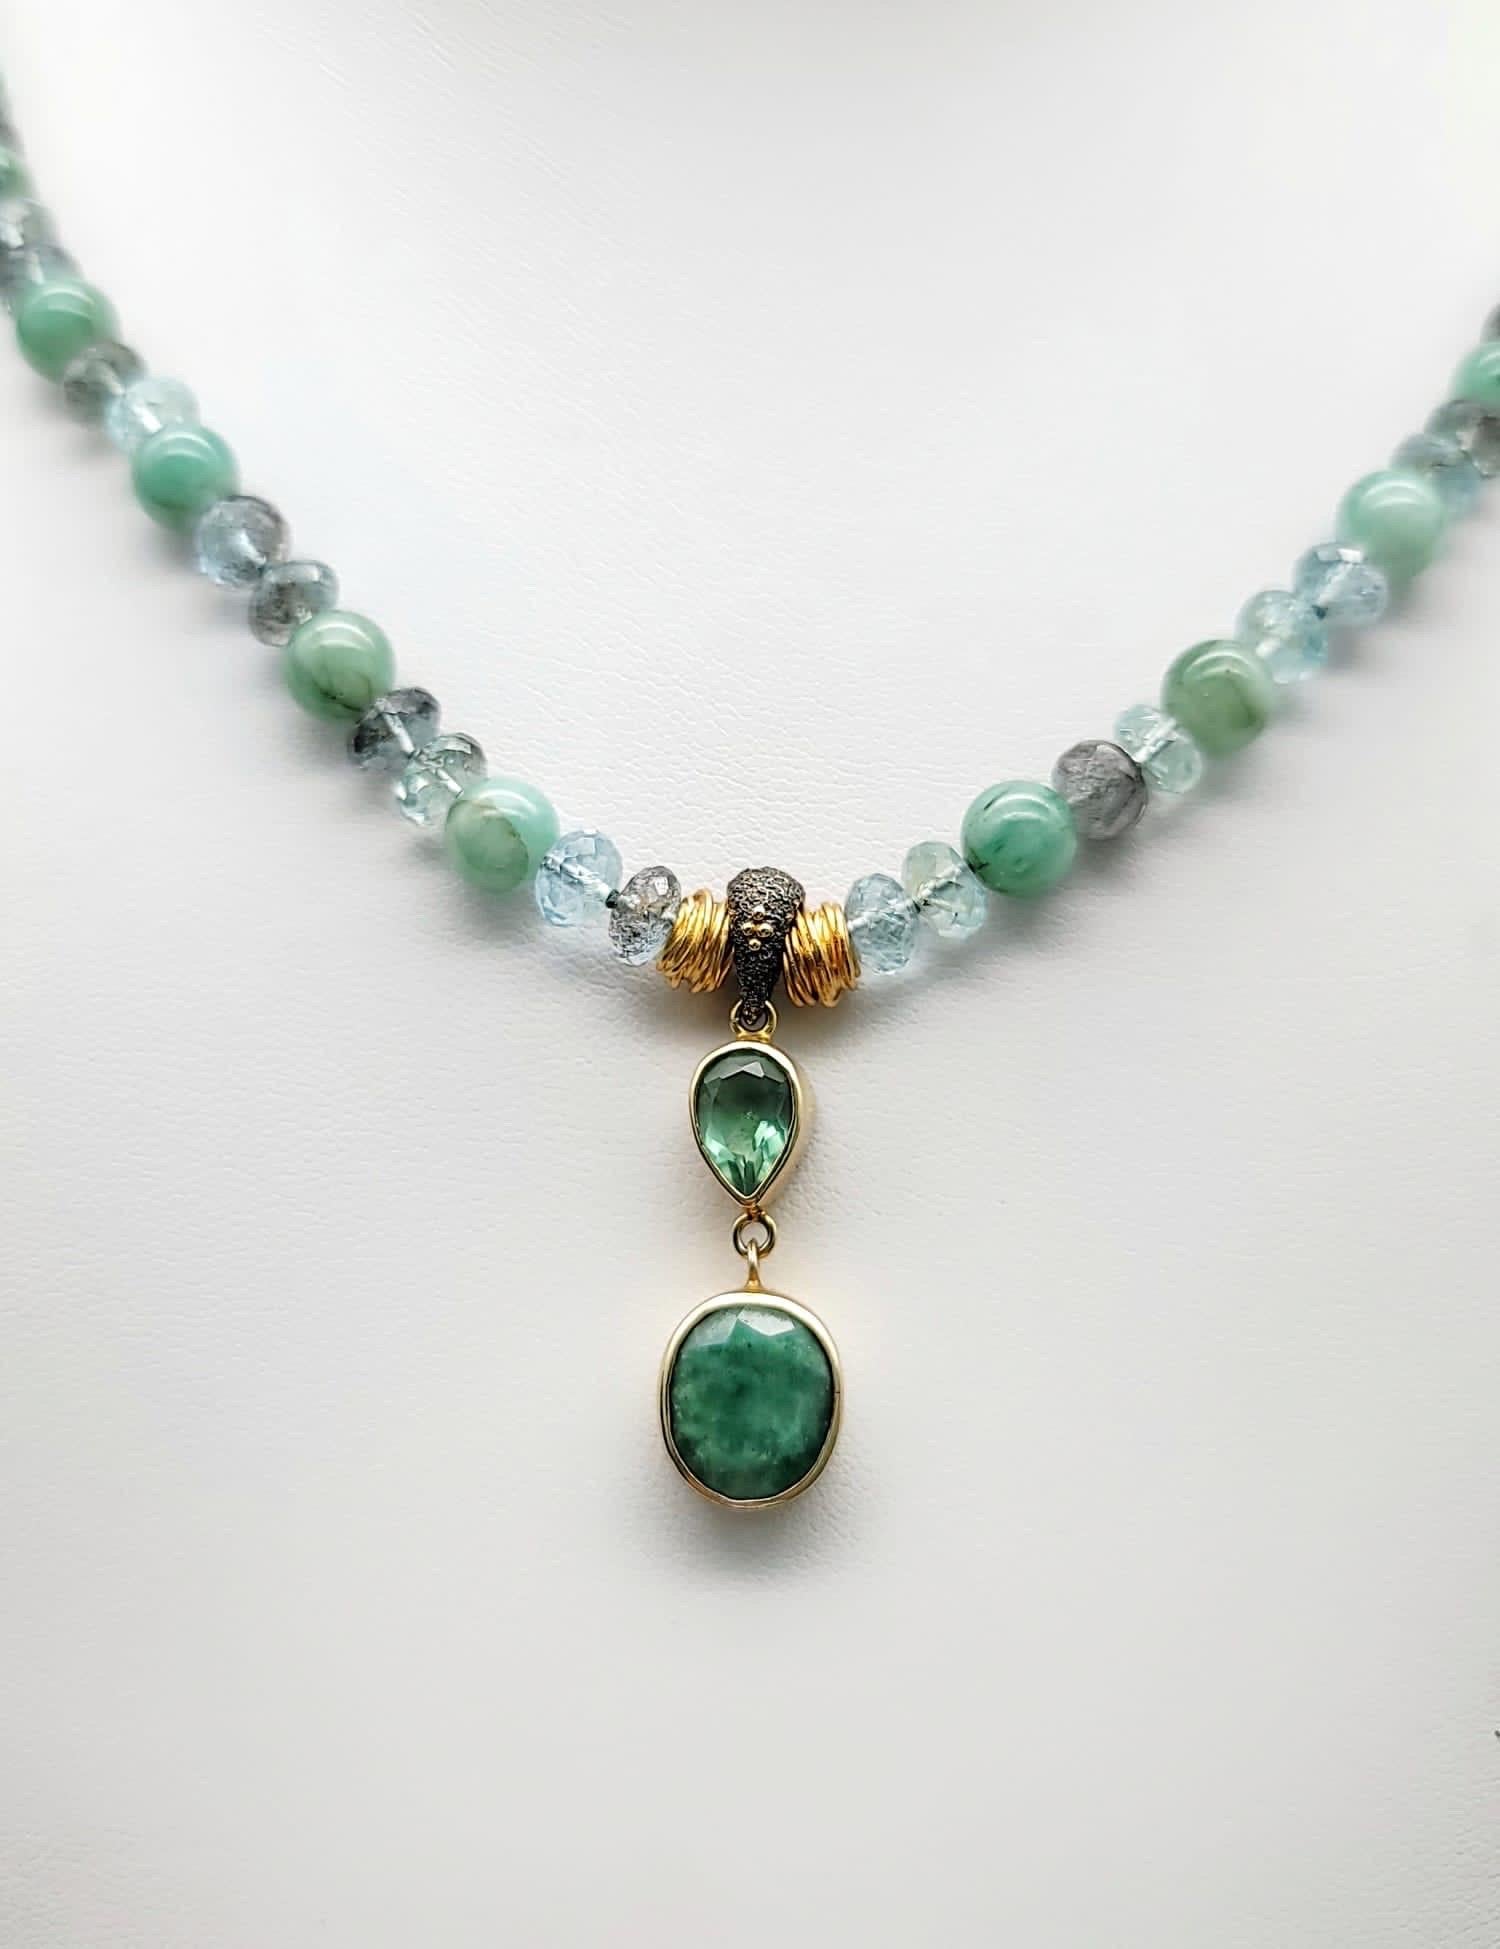 Mixed Cut A.Jeschel Emerald pendant and Aquamarine necklace.